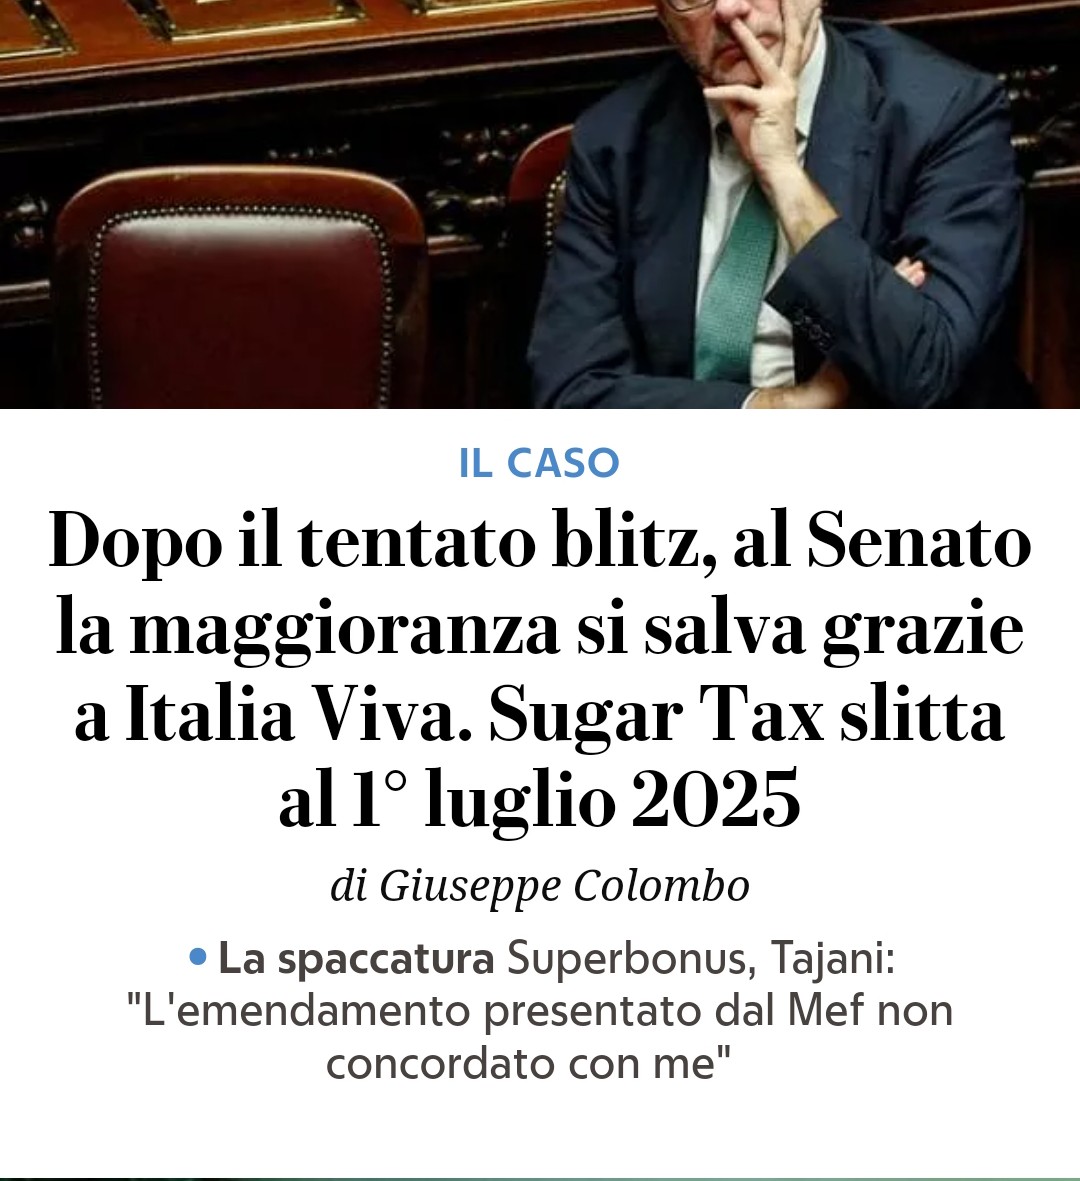 Maggioranza spaccata sul Superbonus e Forza Italia non lo vota. Nessun problema: arriva in soccorso Italia Viva ed il Governo è salvo. Ricordiamolo: Renzi ha salvato questo Governo dalla sconfitta.